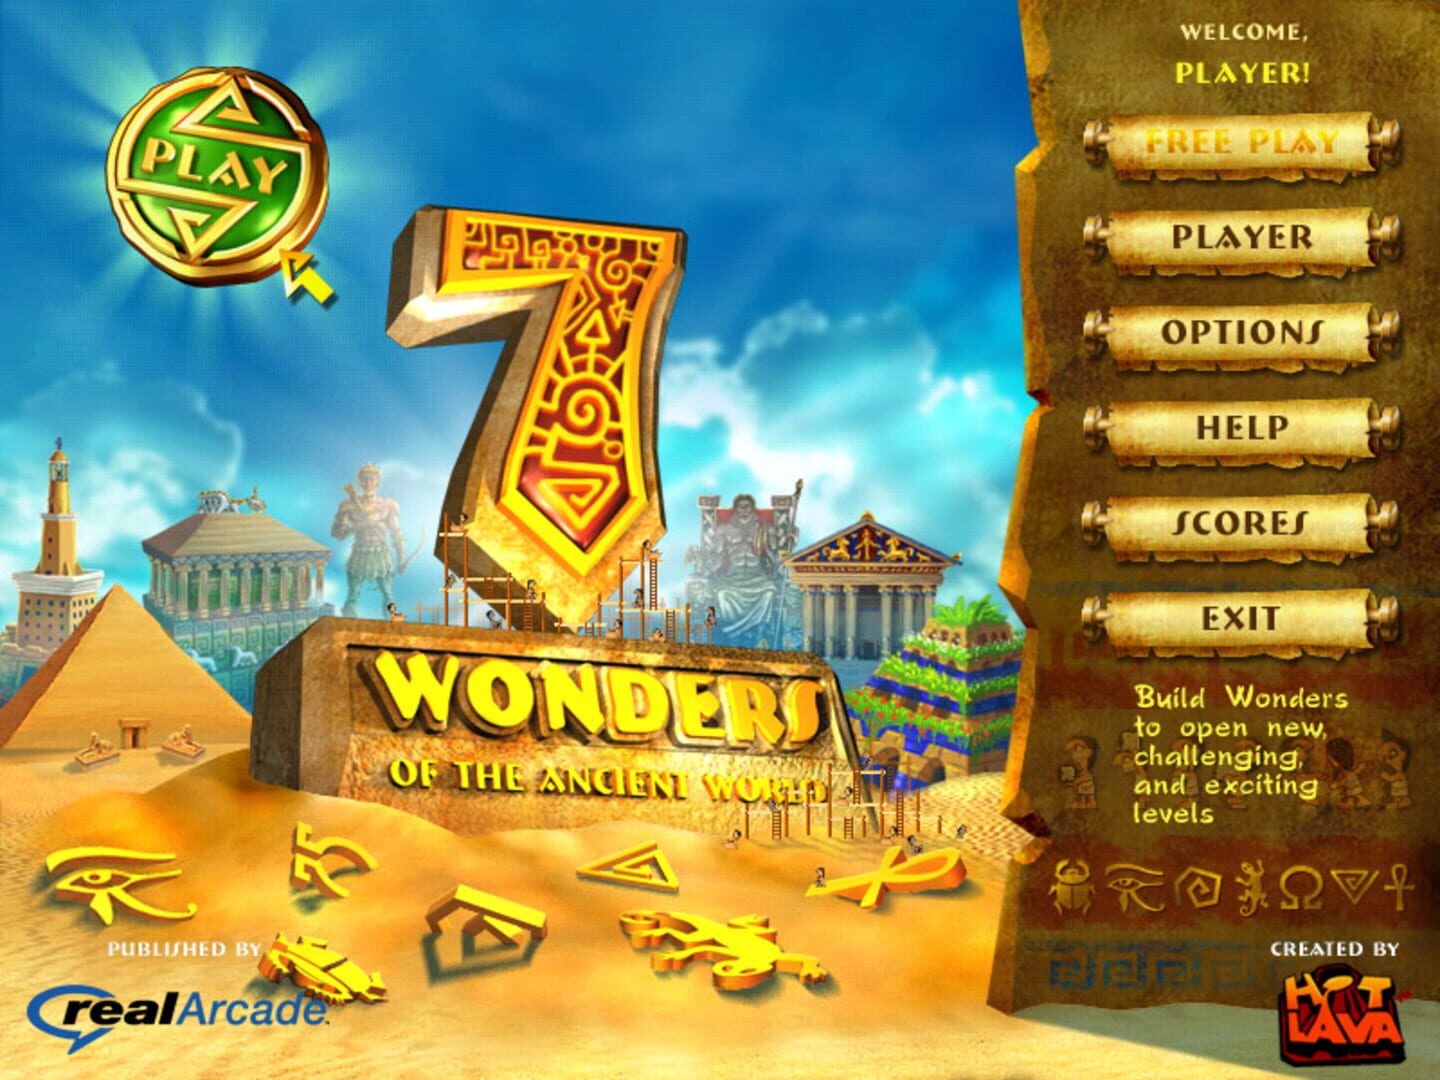 Игры 7 тура. 7 Wonders игра. 7 Чудес света игра. Компьютерная игра семь чудес света.